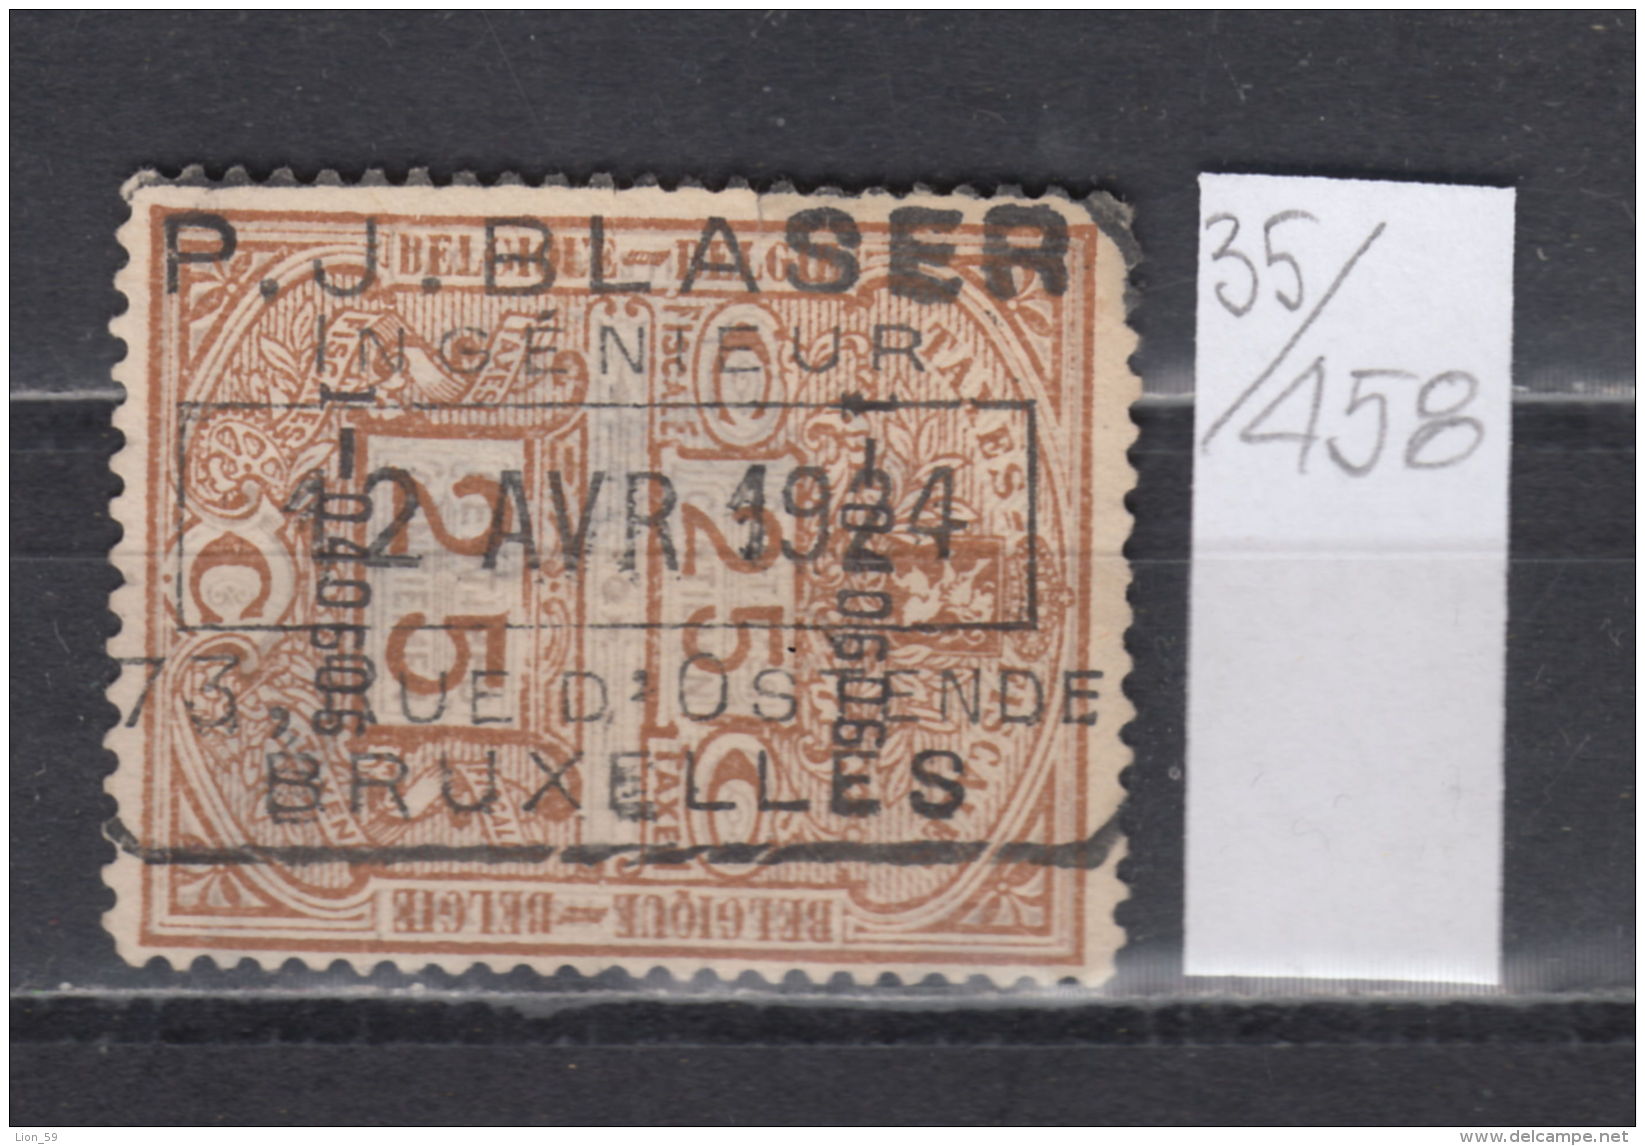 35K458 / 1924 - 25 C. TAXES FISCALES , RAILWAY P.J. BLASER - BRUXELLES , Revenue Fiscaux Steuermarken , Belgique Belgium - Timbres